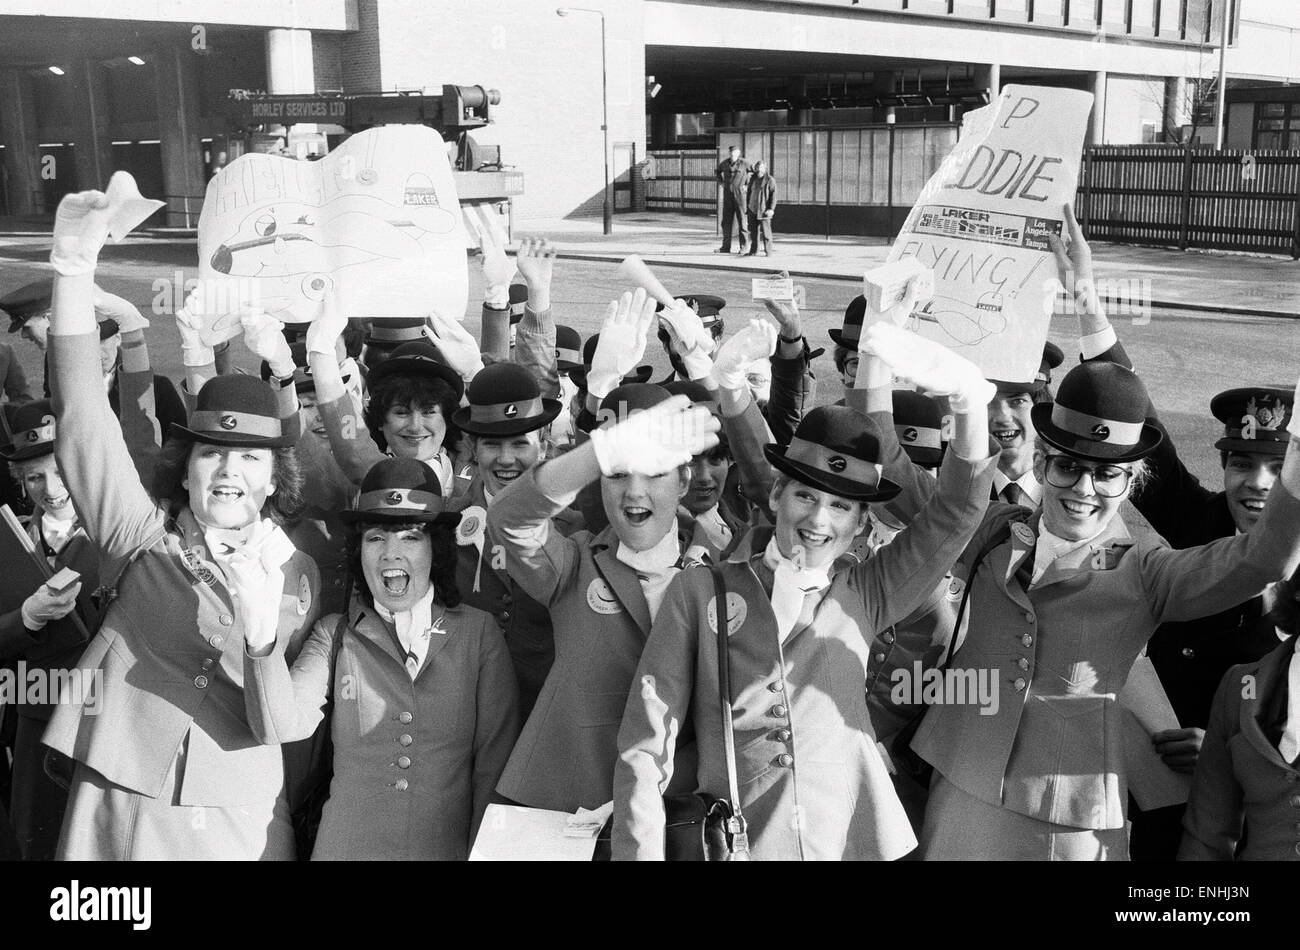 Laker Airways Mädchen sowie Crew-Mitglieder und andere Mitarbeiter reiste nach London für eine Demonstration zur Unterstützung ihres Chefs Sir Freddie Laker, nachdem das Unternehmen ging Pleite. Bild zeigt Laker Personal warten die Busse am Flughafen Gatwick. 8. Februar-198 Stockfoto